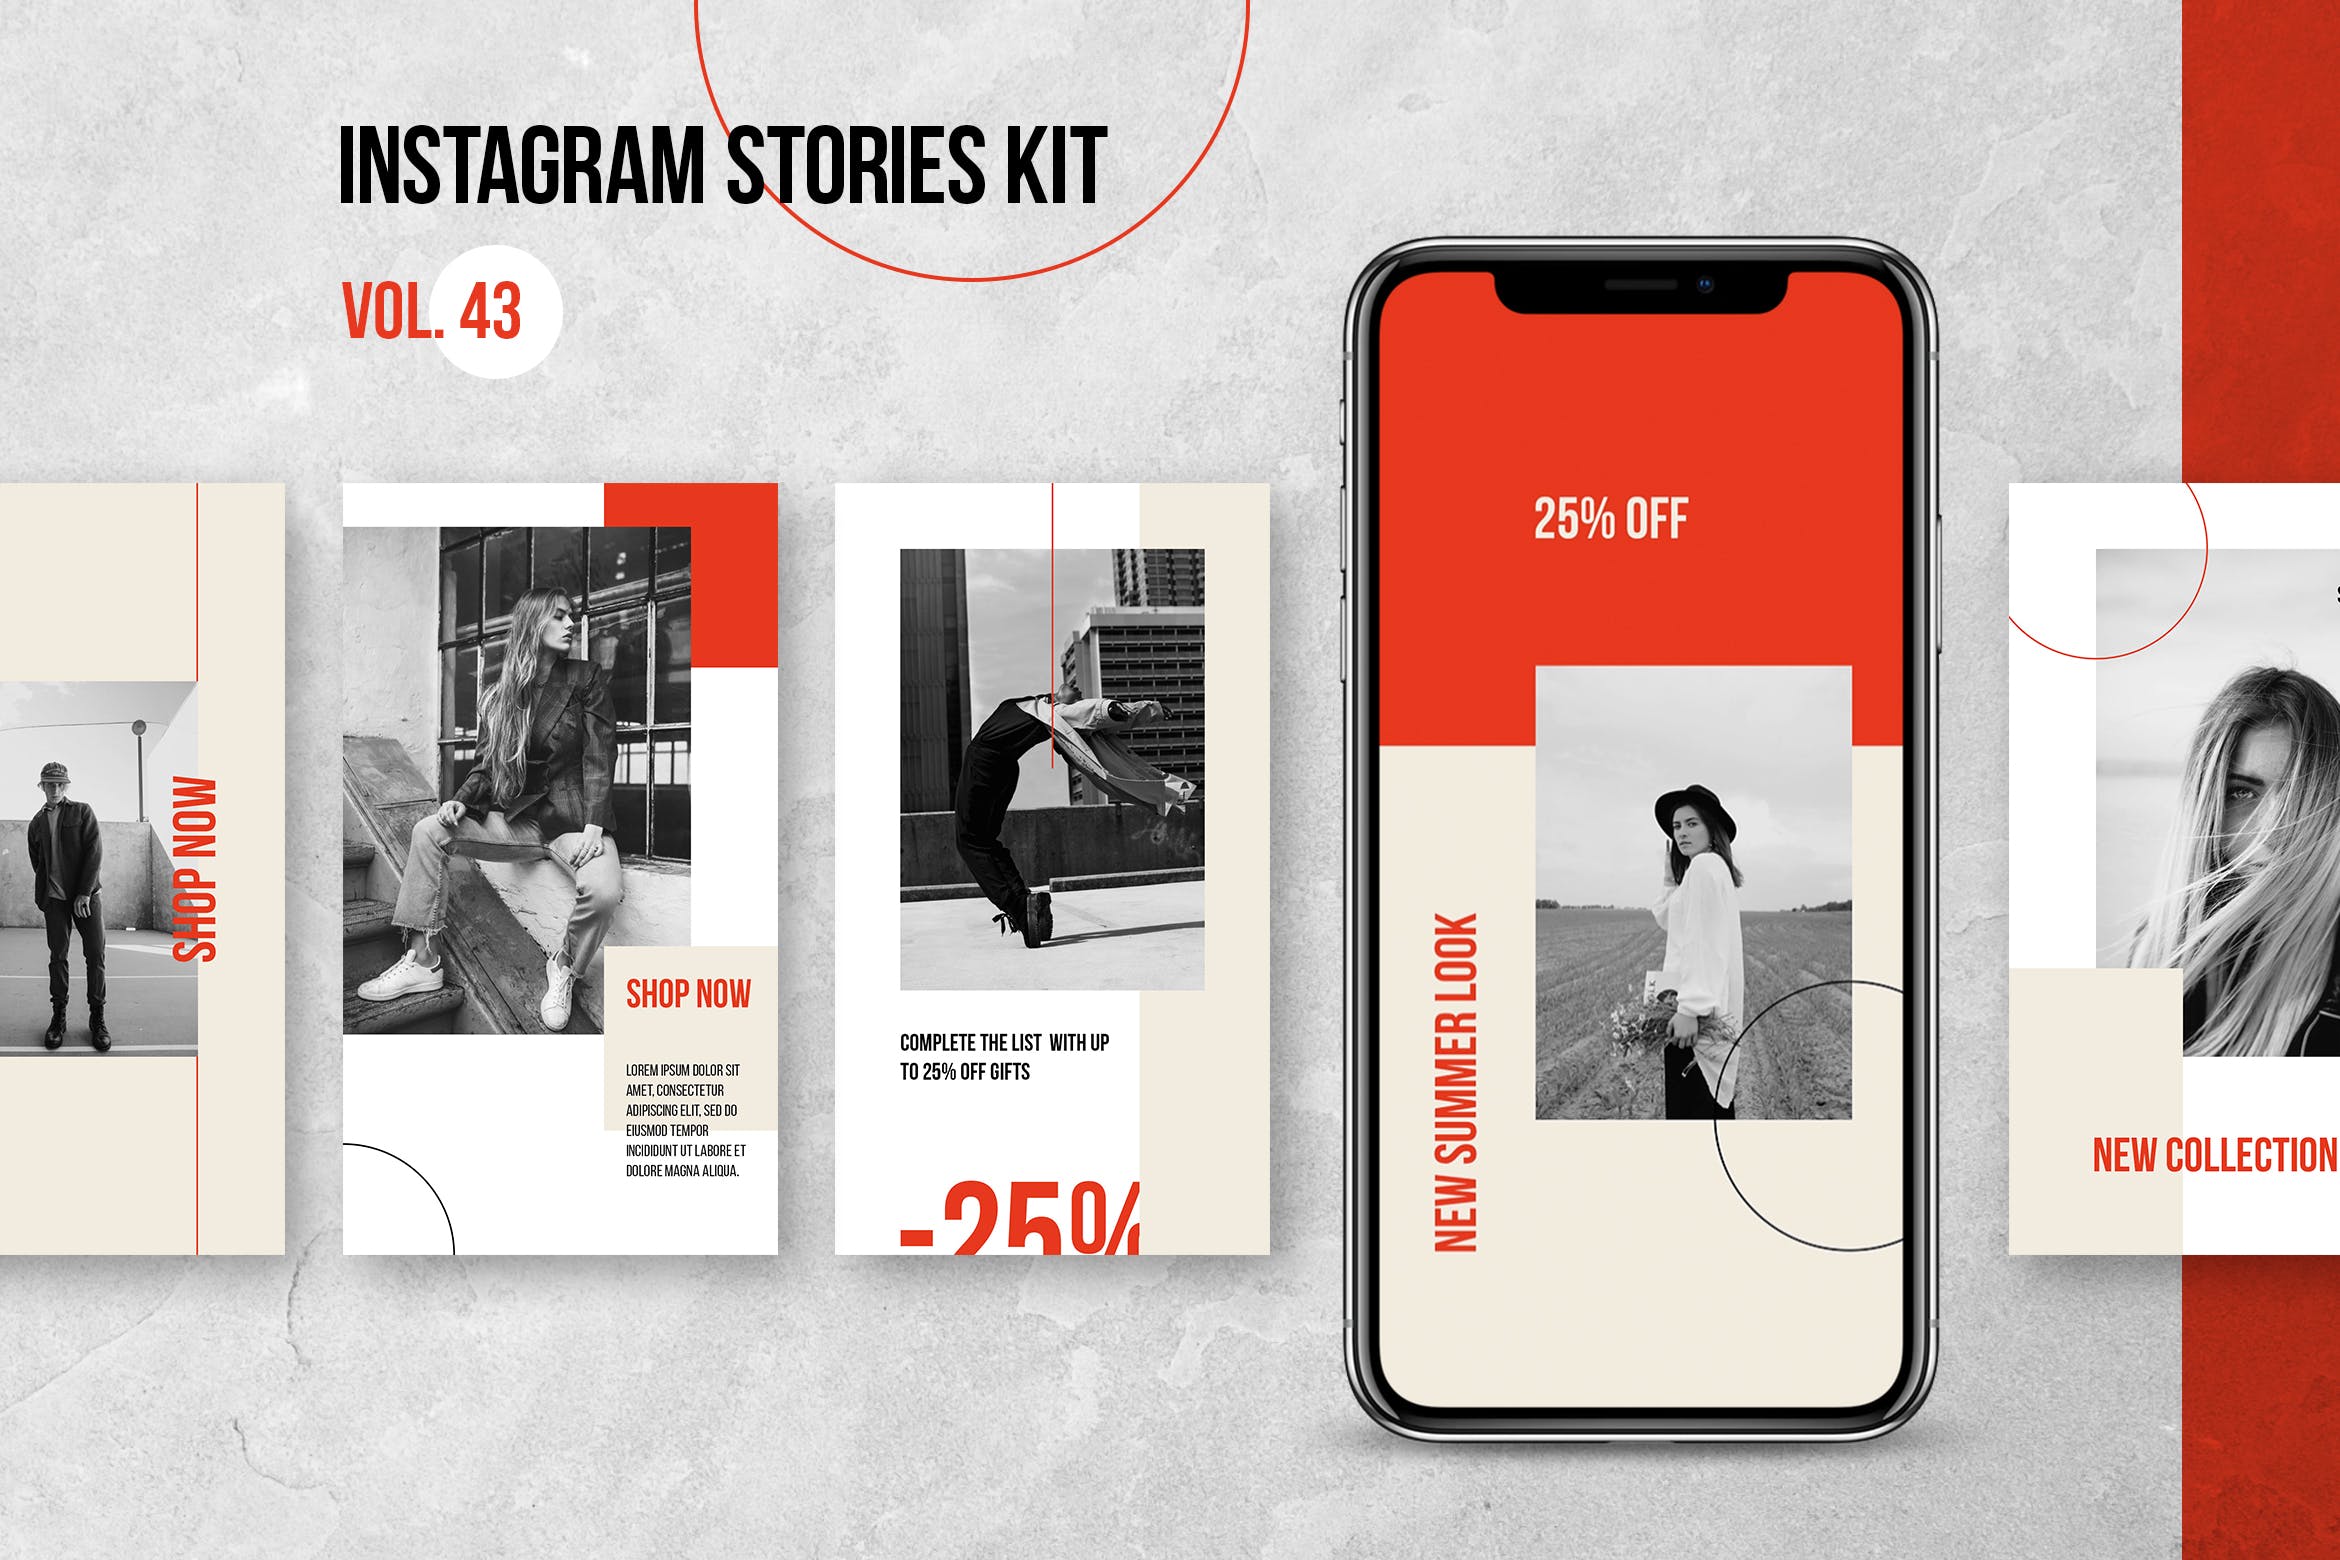 时装品牌促销Instagram宣传推广设计社交媒体素材 Instagram Stories Kit (Vol.44)设计素材模板